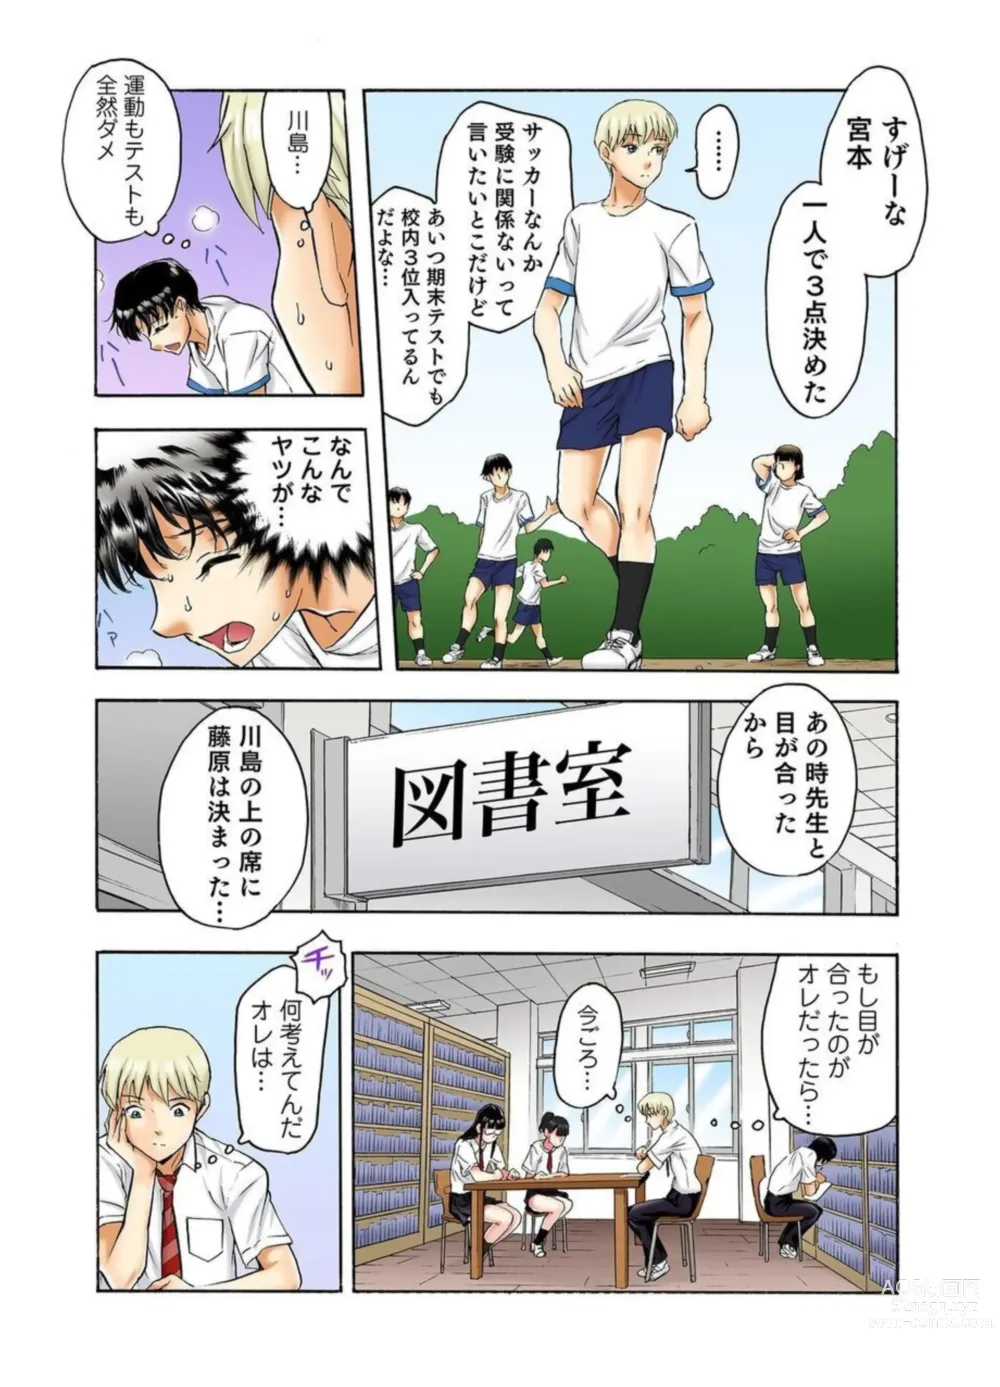 Page 10 of manga Tenkousei no Seki ga Ore no Hiza no Ue ni Kimatta no de Hame Temita Dai 2-bu 1-2